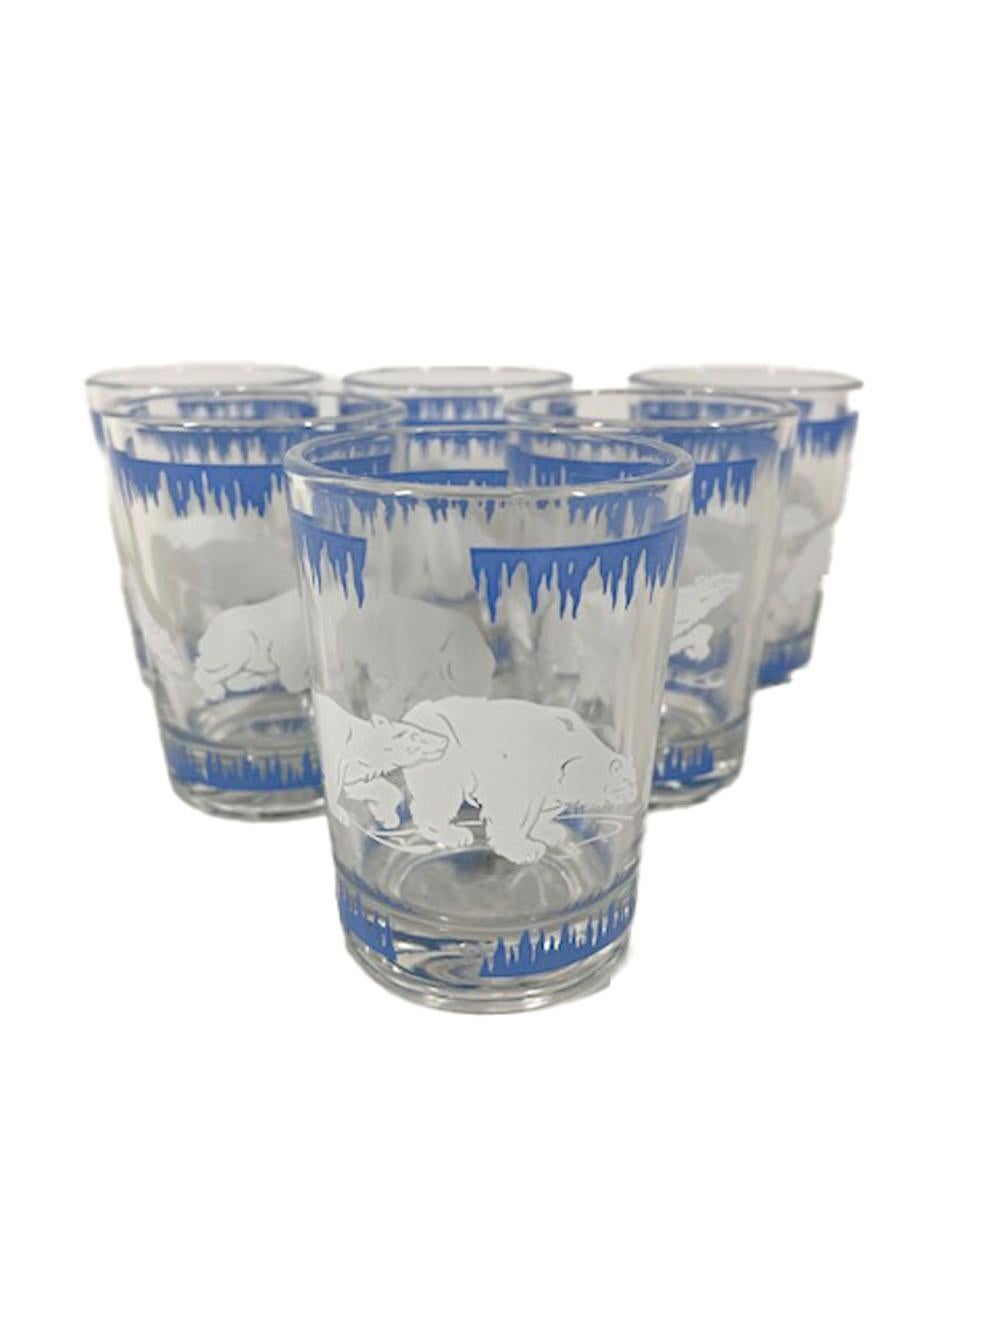 Ensemble de cocktail Art Déco de huit pièces comprenant un shaker à couvercle chromé, un bol à glace et six verres à cocktail. Décoré d'une bande de glace bleue au-dessus et au-dessous d'ours polaires blancs.